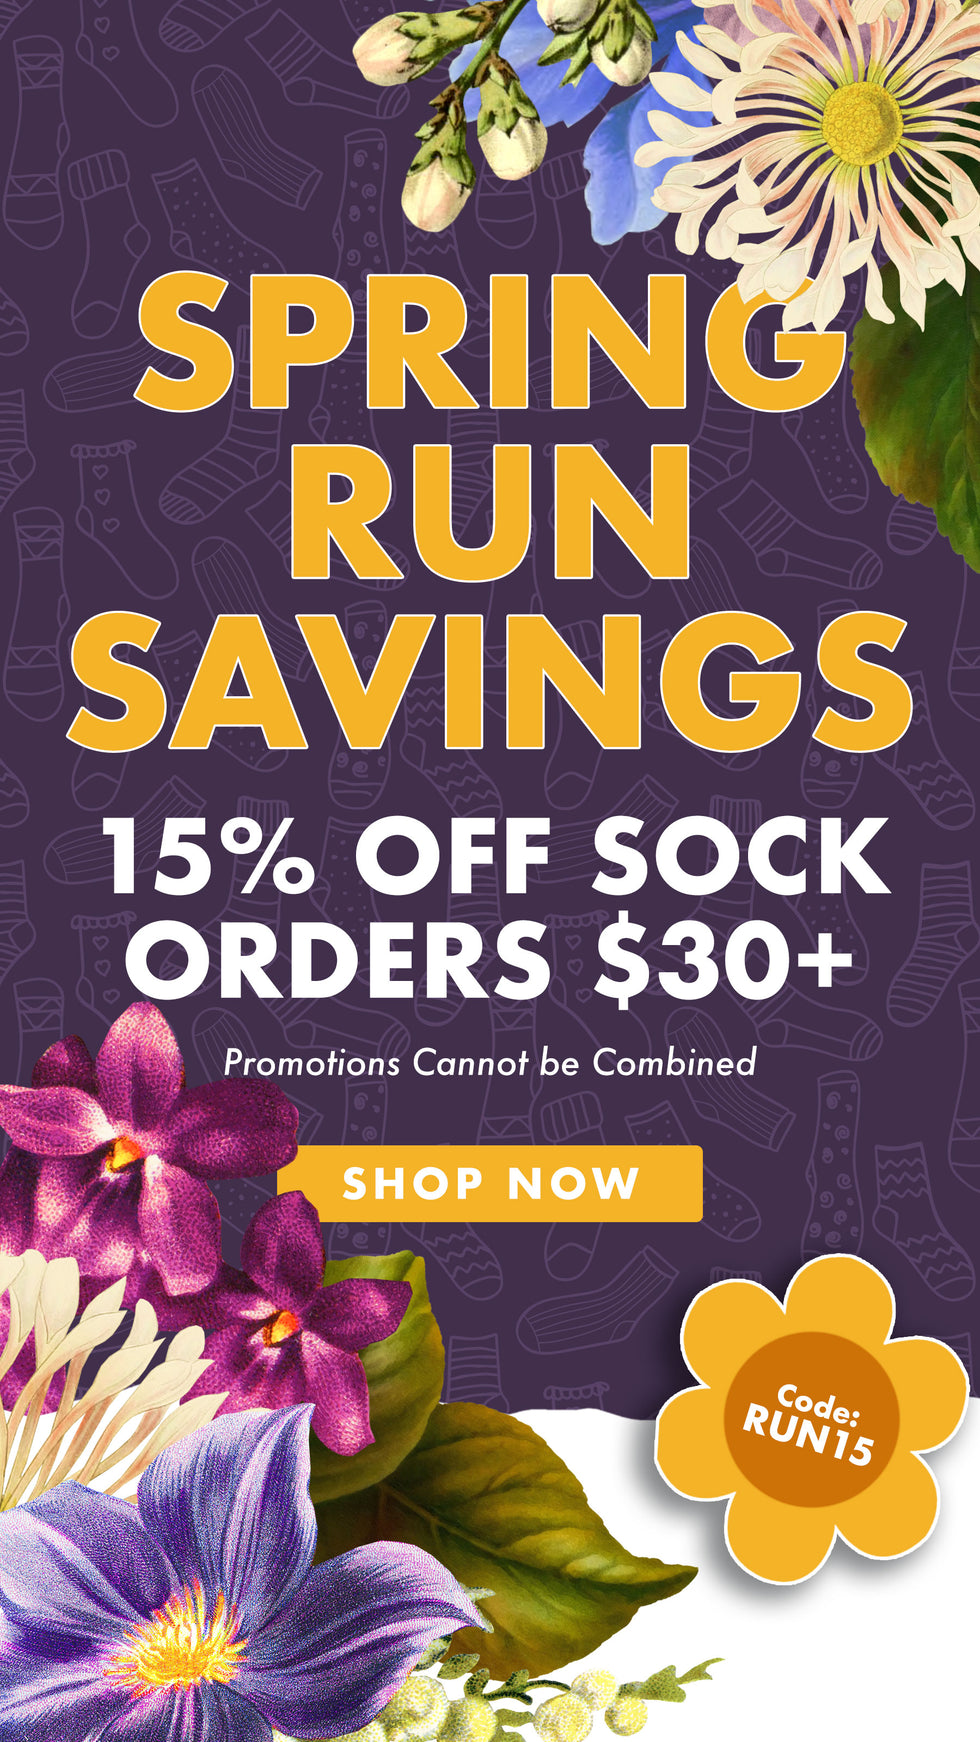 Spring Run Savings 15% Off Sock Orders $30+ Code RUN15